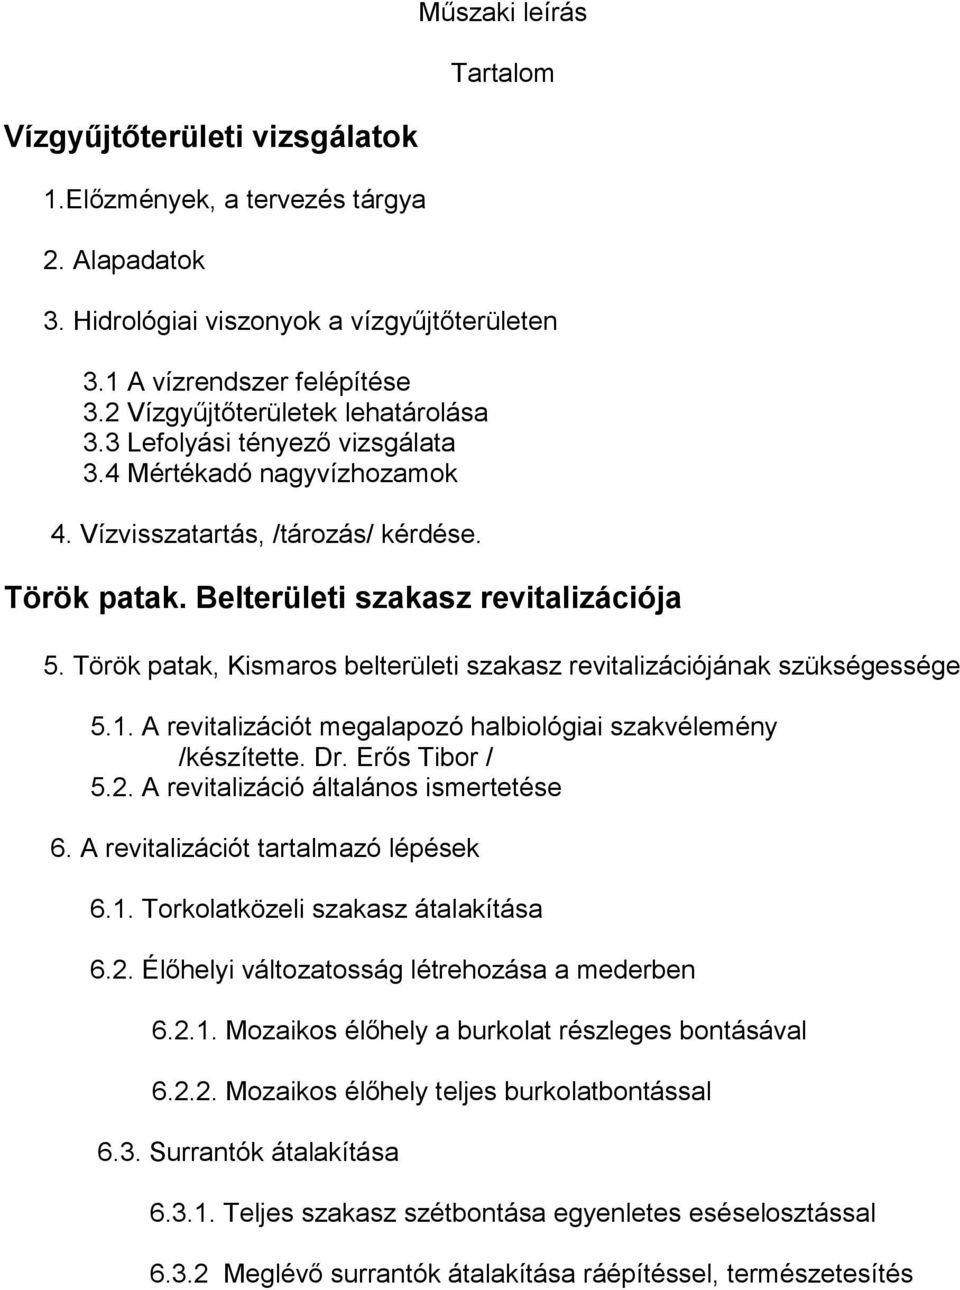 Török patak, Kismaros belterületi szakasz revitalizációjának szükségessége 5.1. A revitalizációt megalapozó halbiológiai szakvélemény /készítette. Dr. Erős Tibor / 5.2.